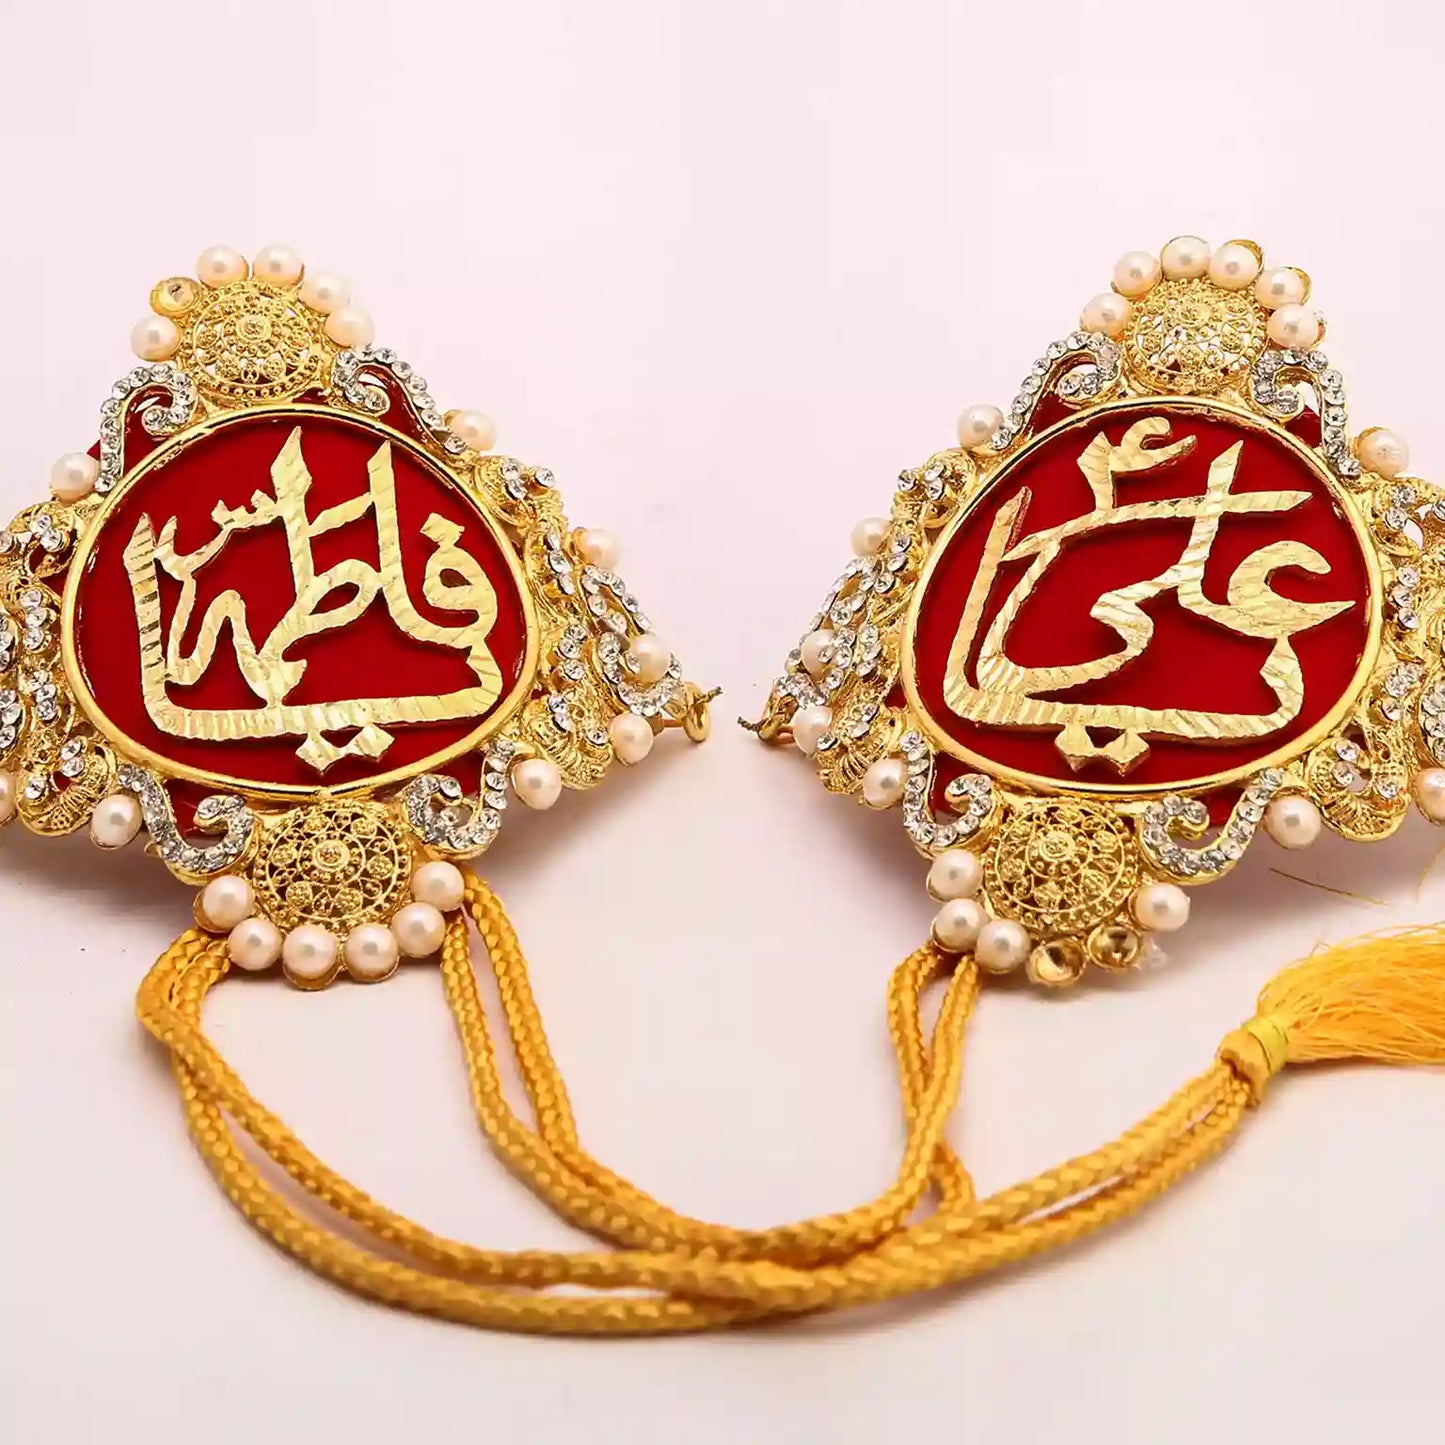 Ya Ali as and Ya Fatima sa Red Kashi Imamzamin Zircons & Pearl Work A Symbol of Love